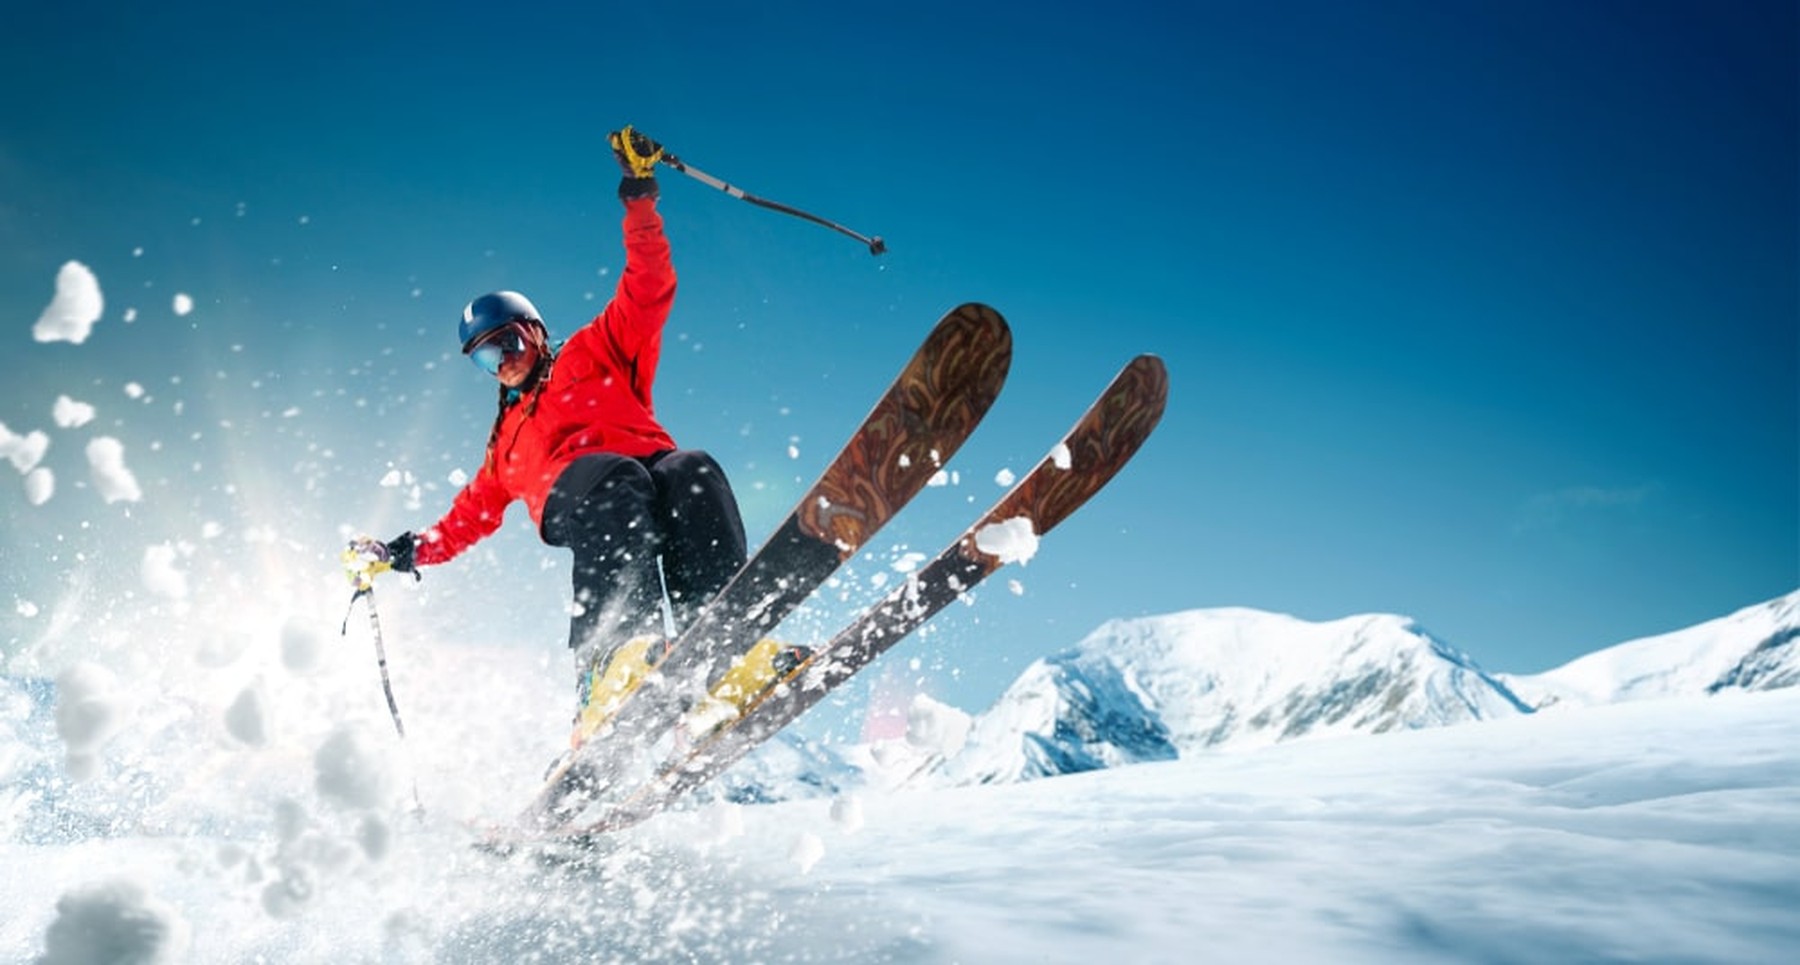 Goedkoop op wintersport: tips om niet de hoofdprijs te betalen